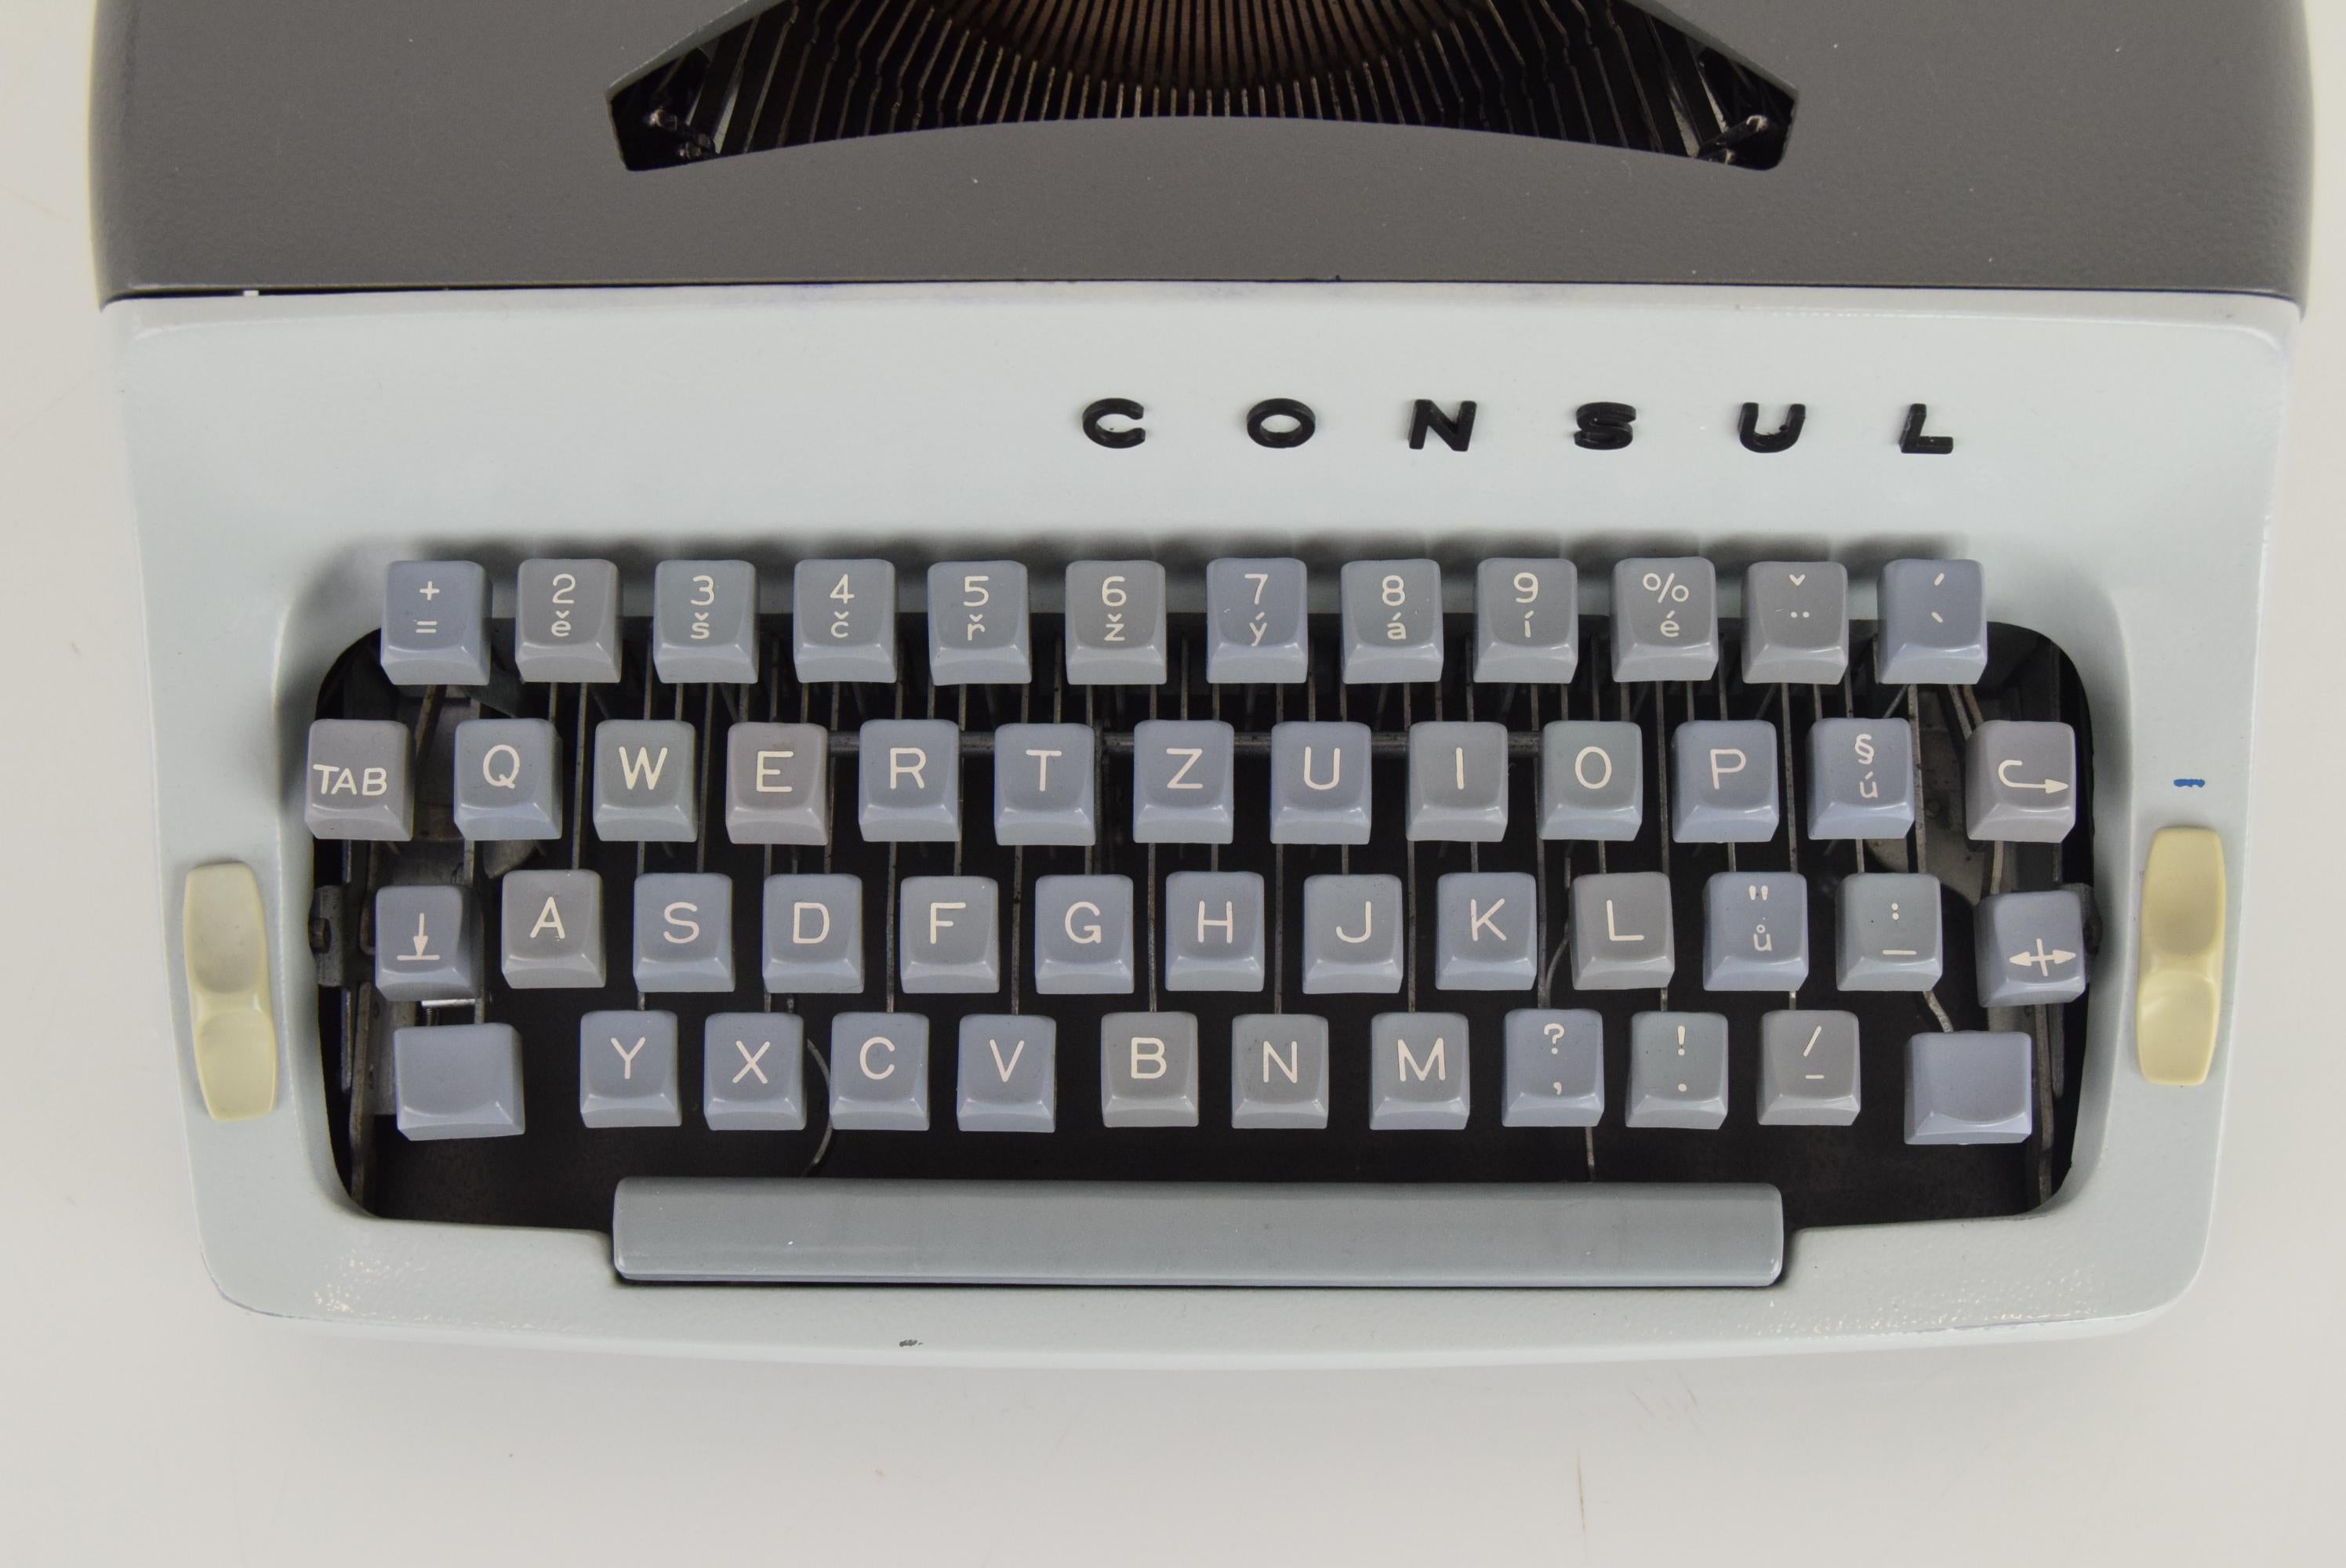 1960s typewriter